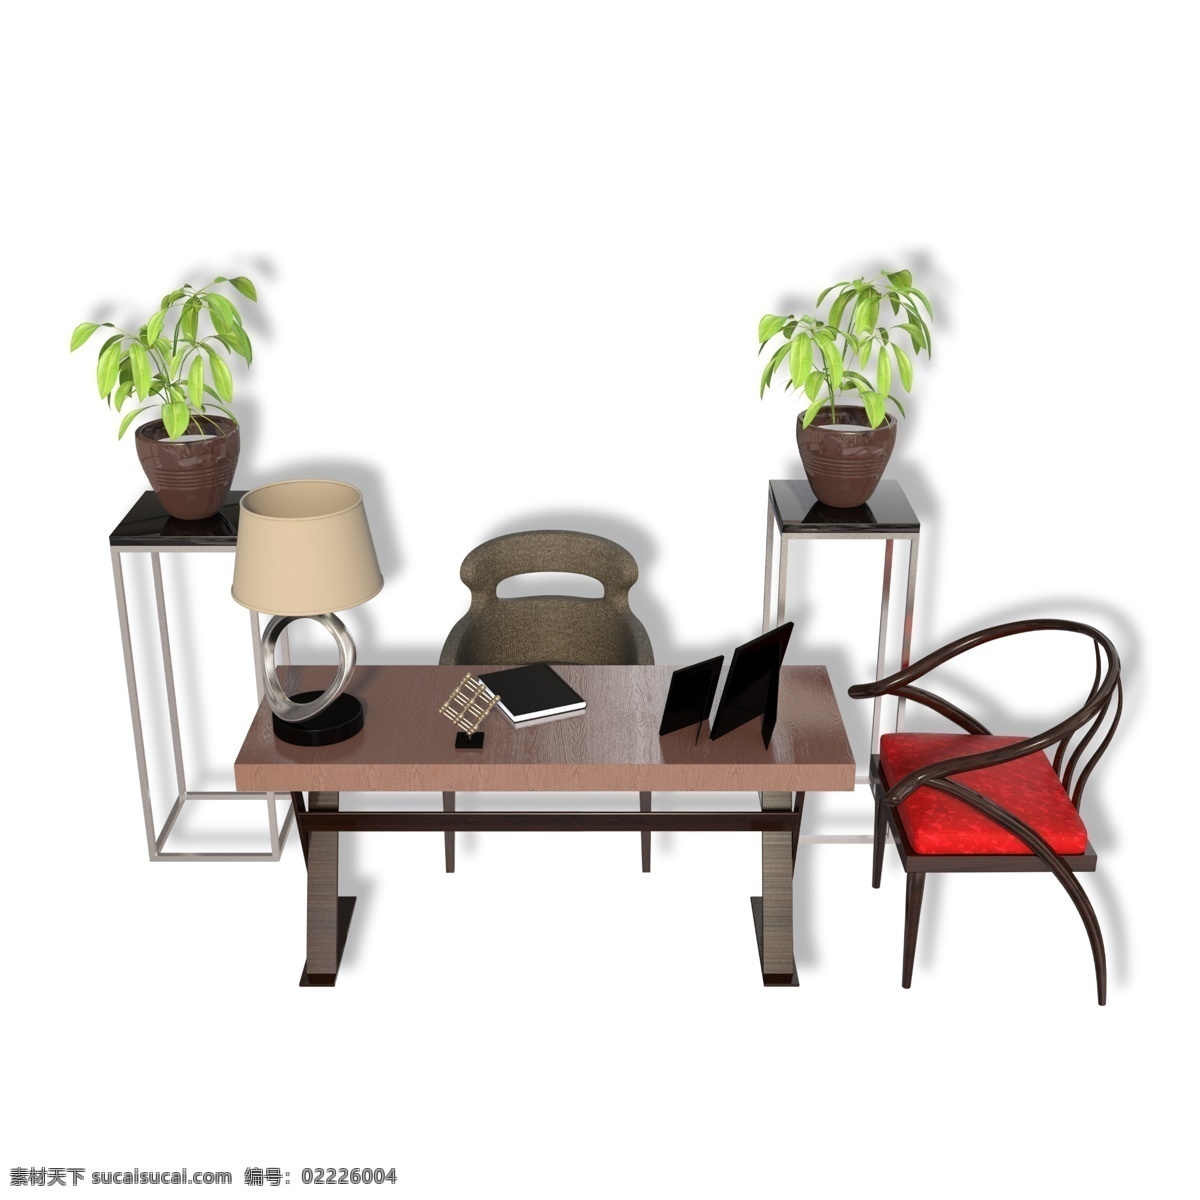 简约 现代 方形 办公桌 桌子 椅子 绿植